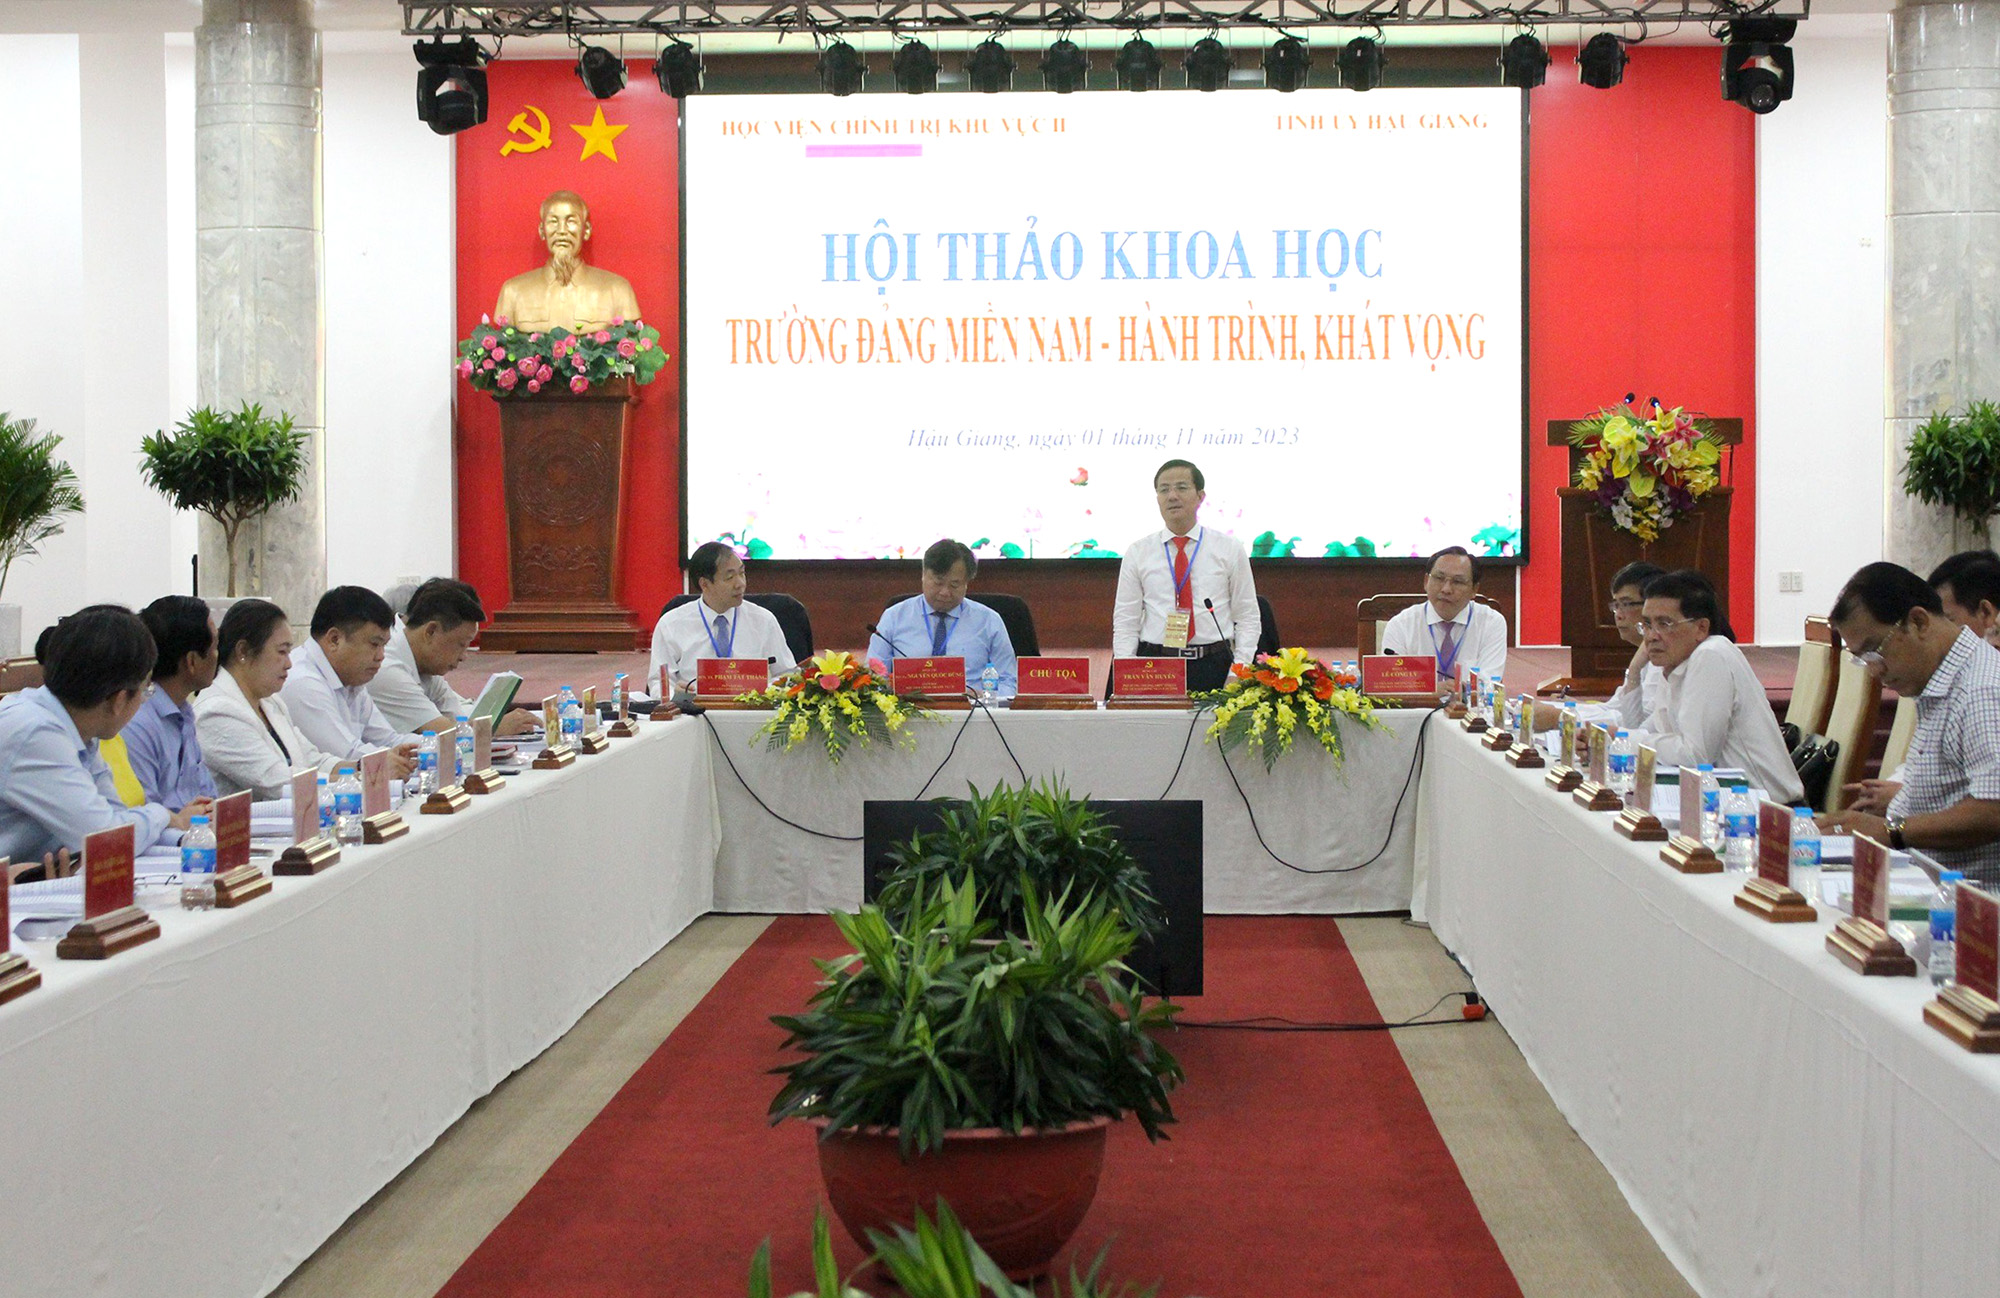 Đồng chí Trần Văn Huyến, Phó Bí thư Thường trực Tỉnh ủy, Chủ tịch HĐND tỉnh Hậu Giang phát biểu tại hội thảo.